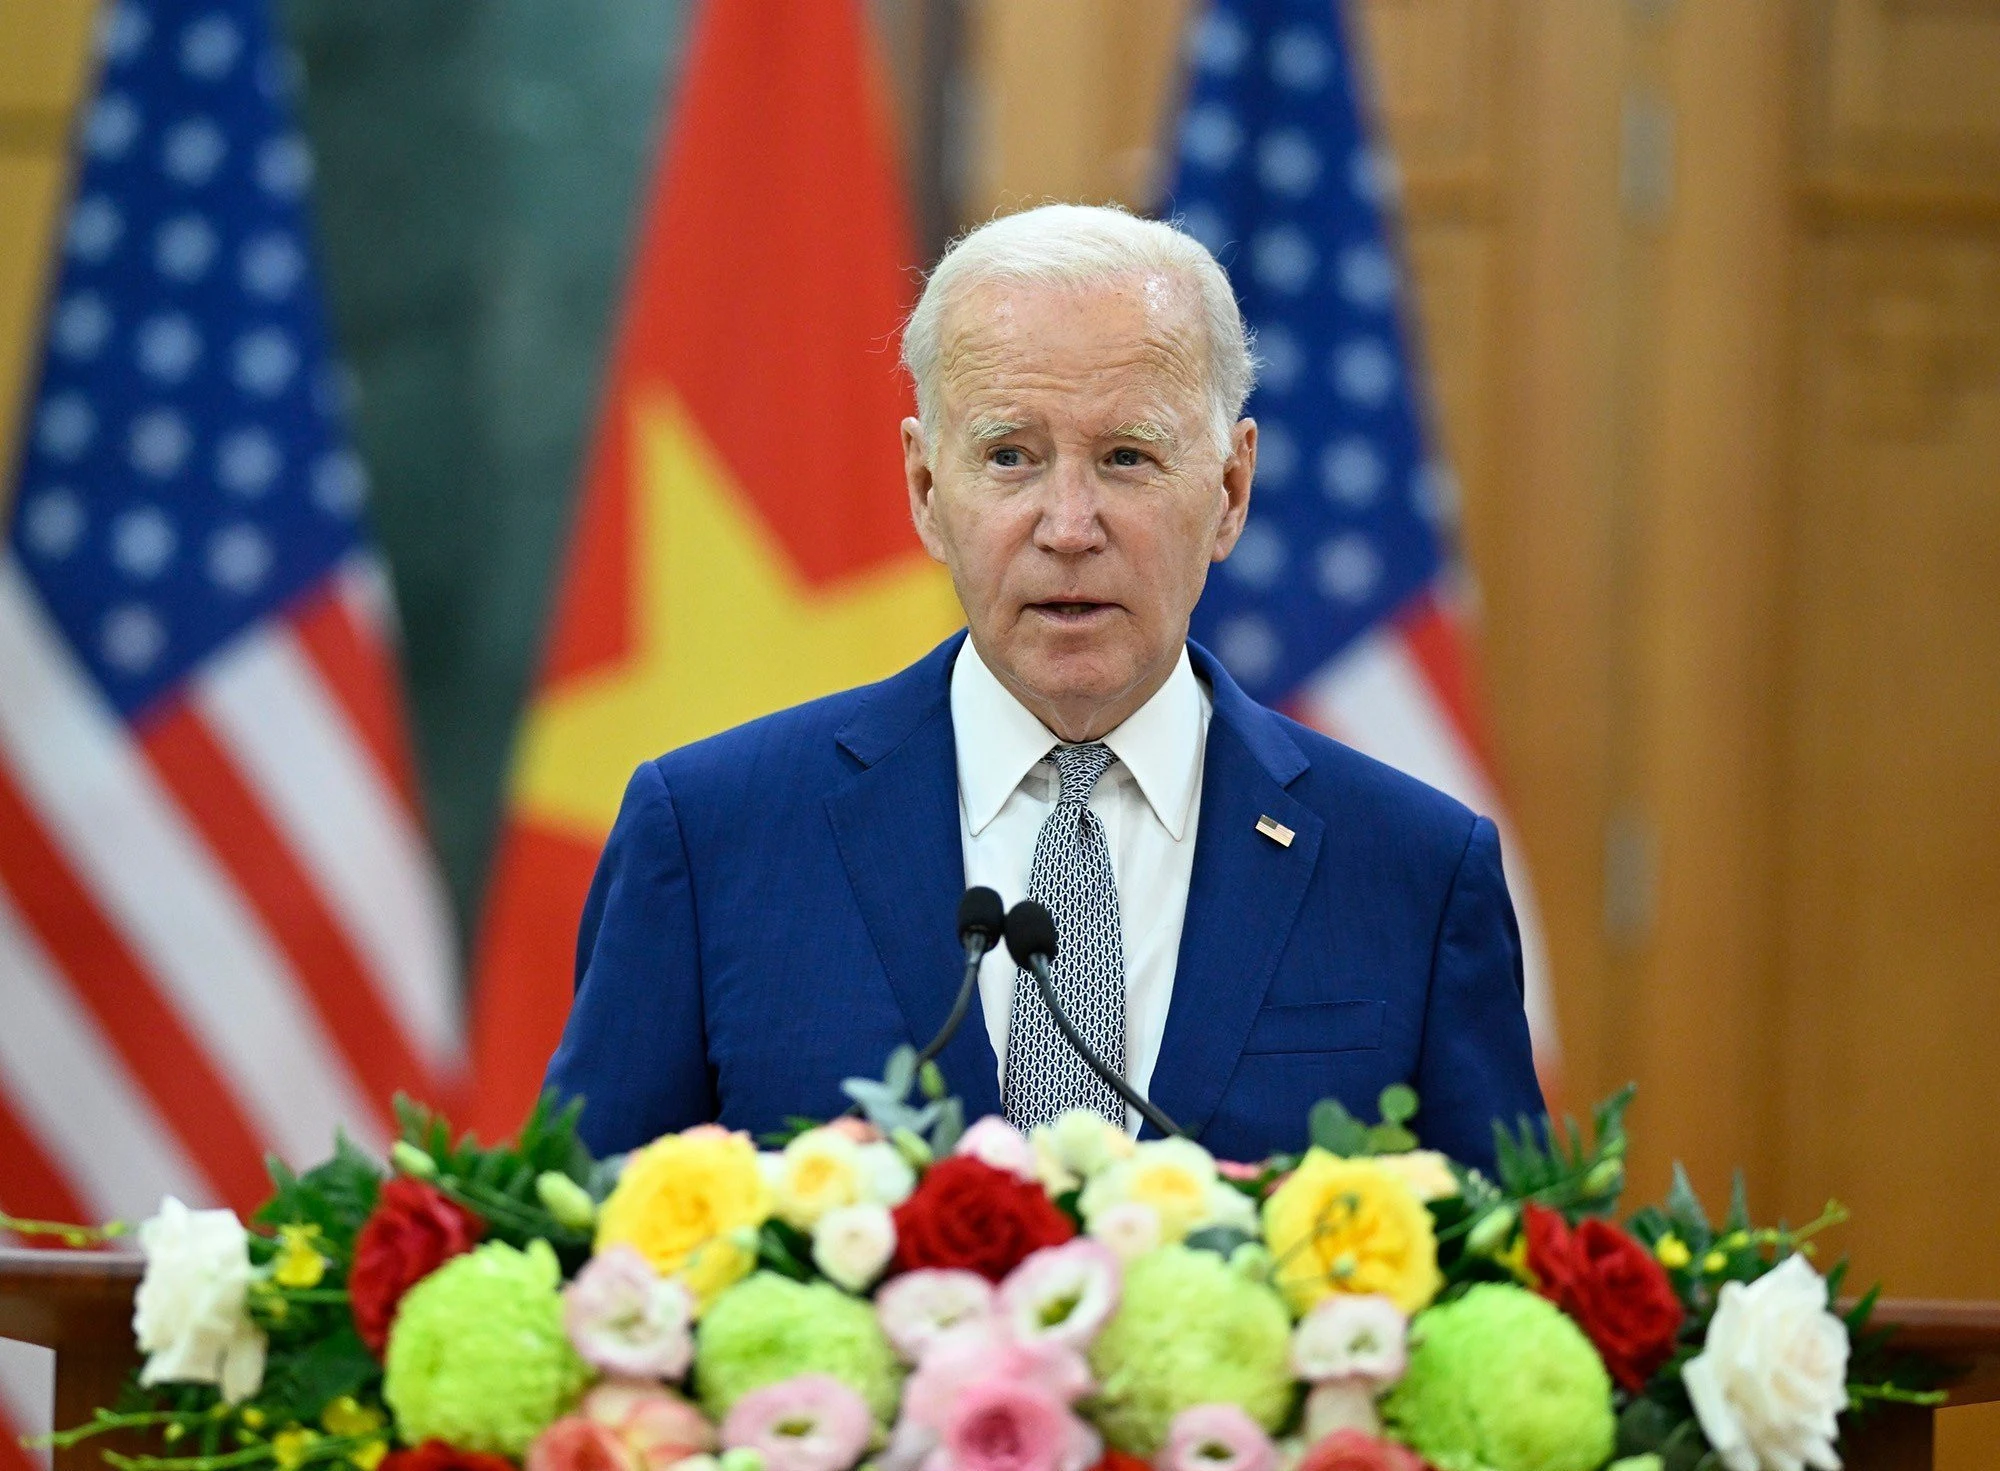 Joe Biden - Tổng thống thứ 46 của Hoa Kỳ